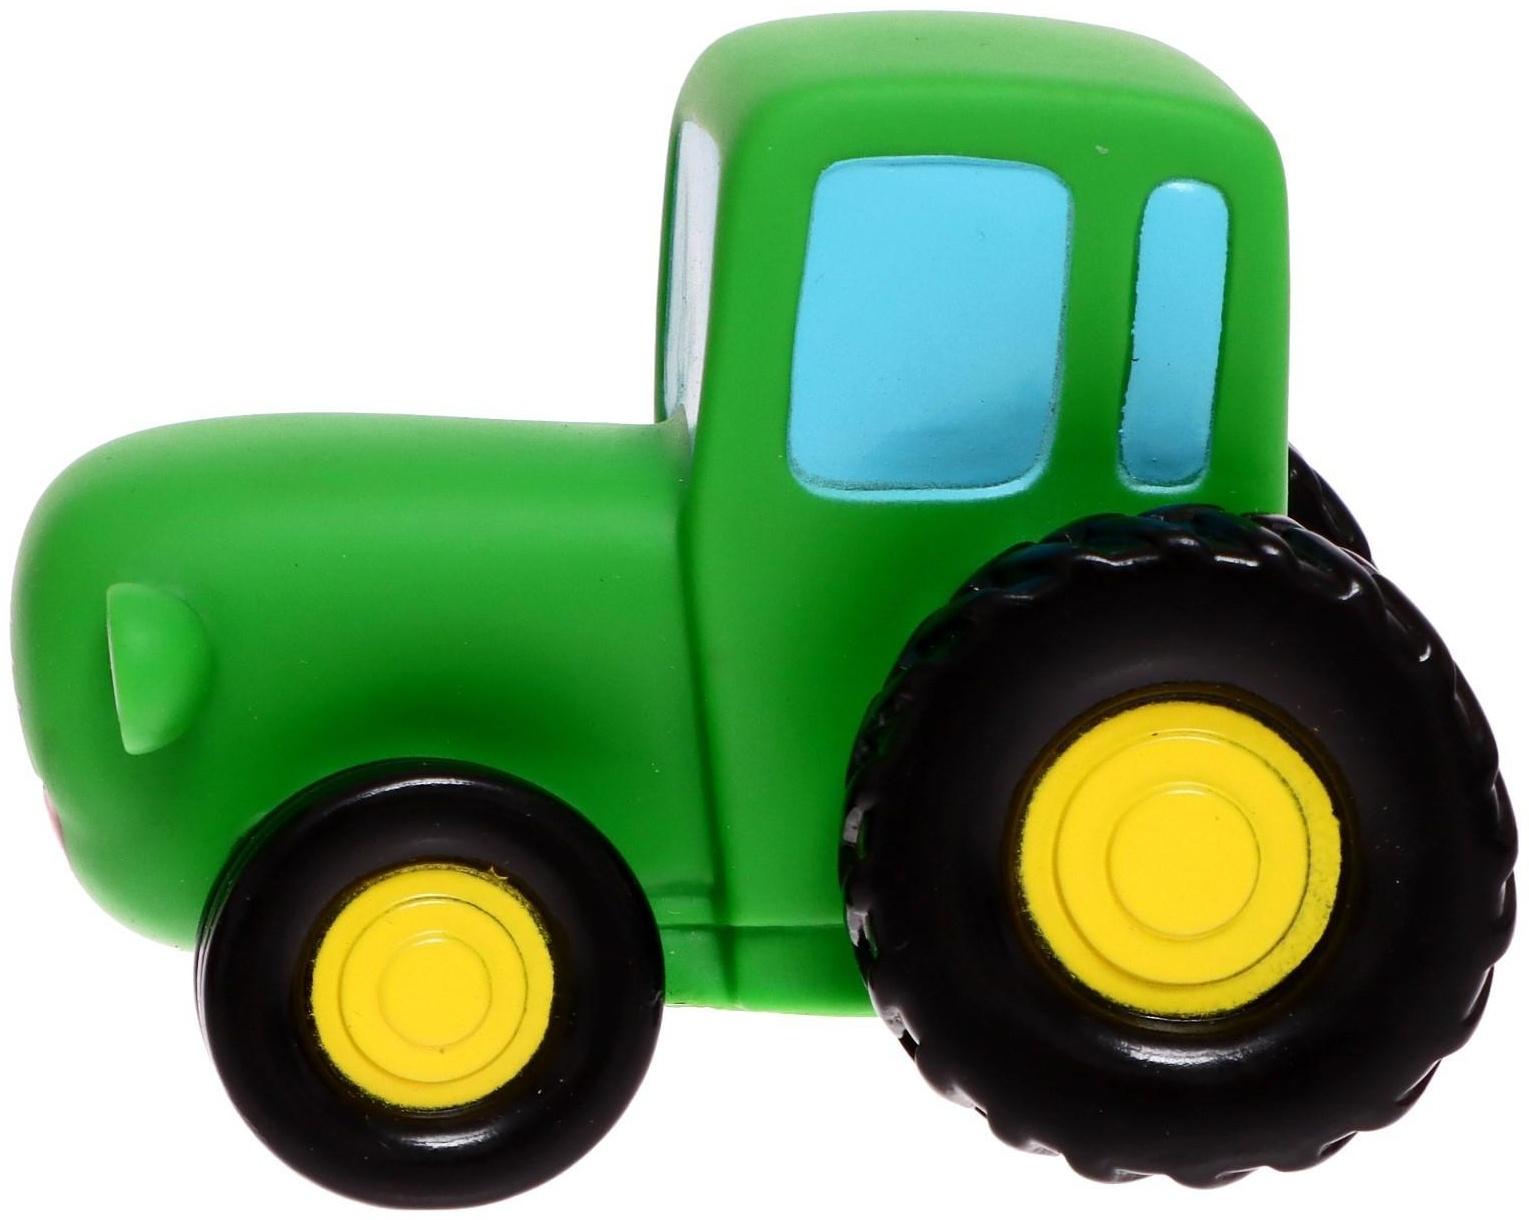 Игрушка для ванны «Синий трактор», цвет зелёный, 10 см